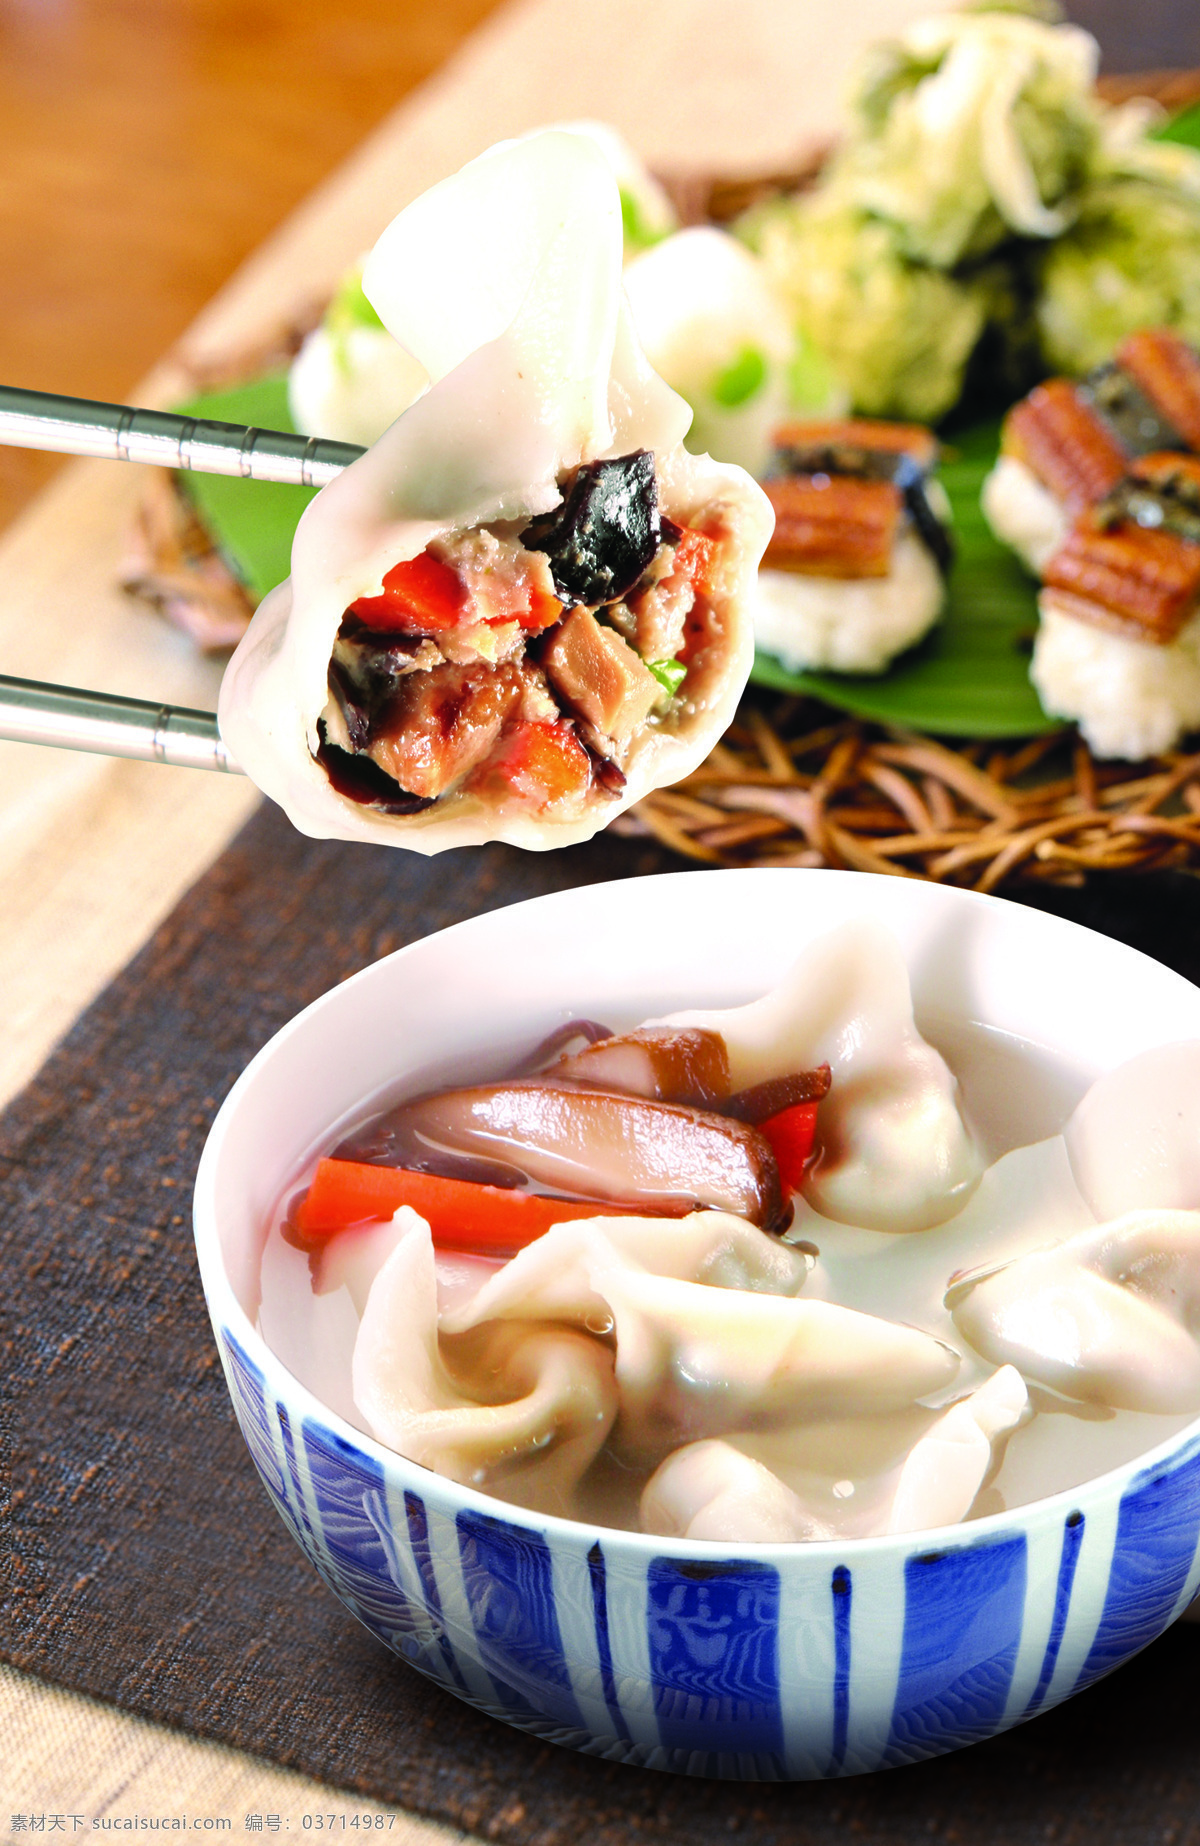 营养香菇饺 速冻食品 美食 海鲜类 传统美食 餐饮美食